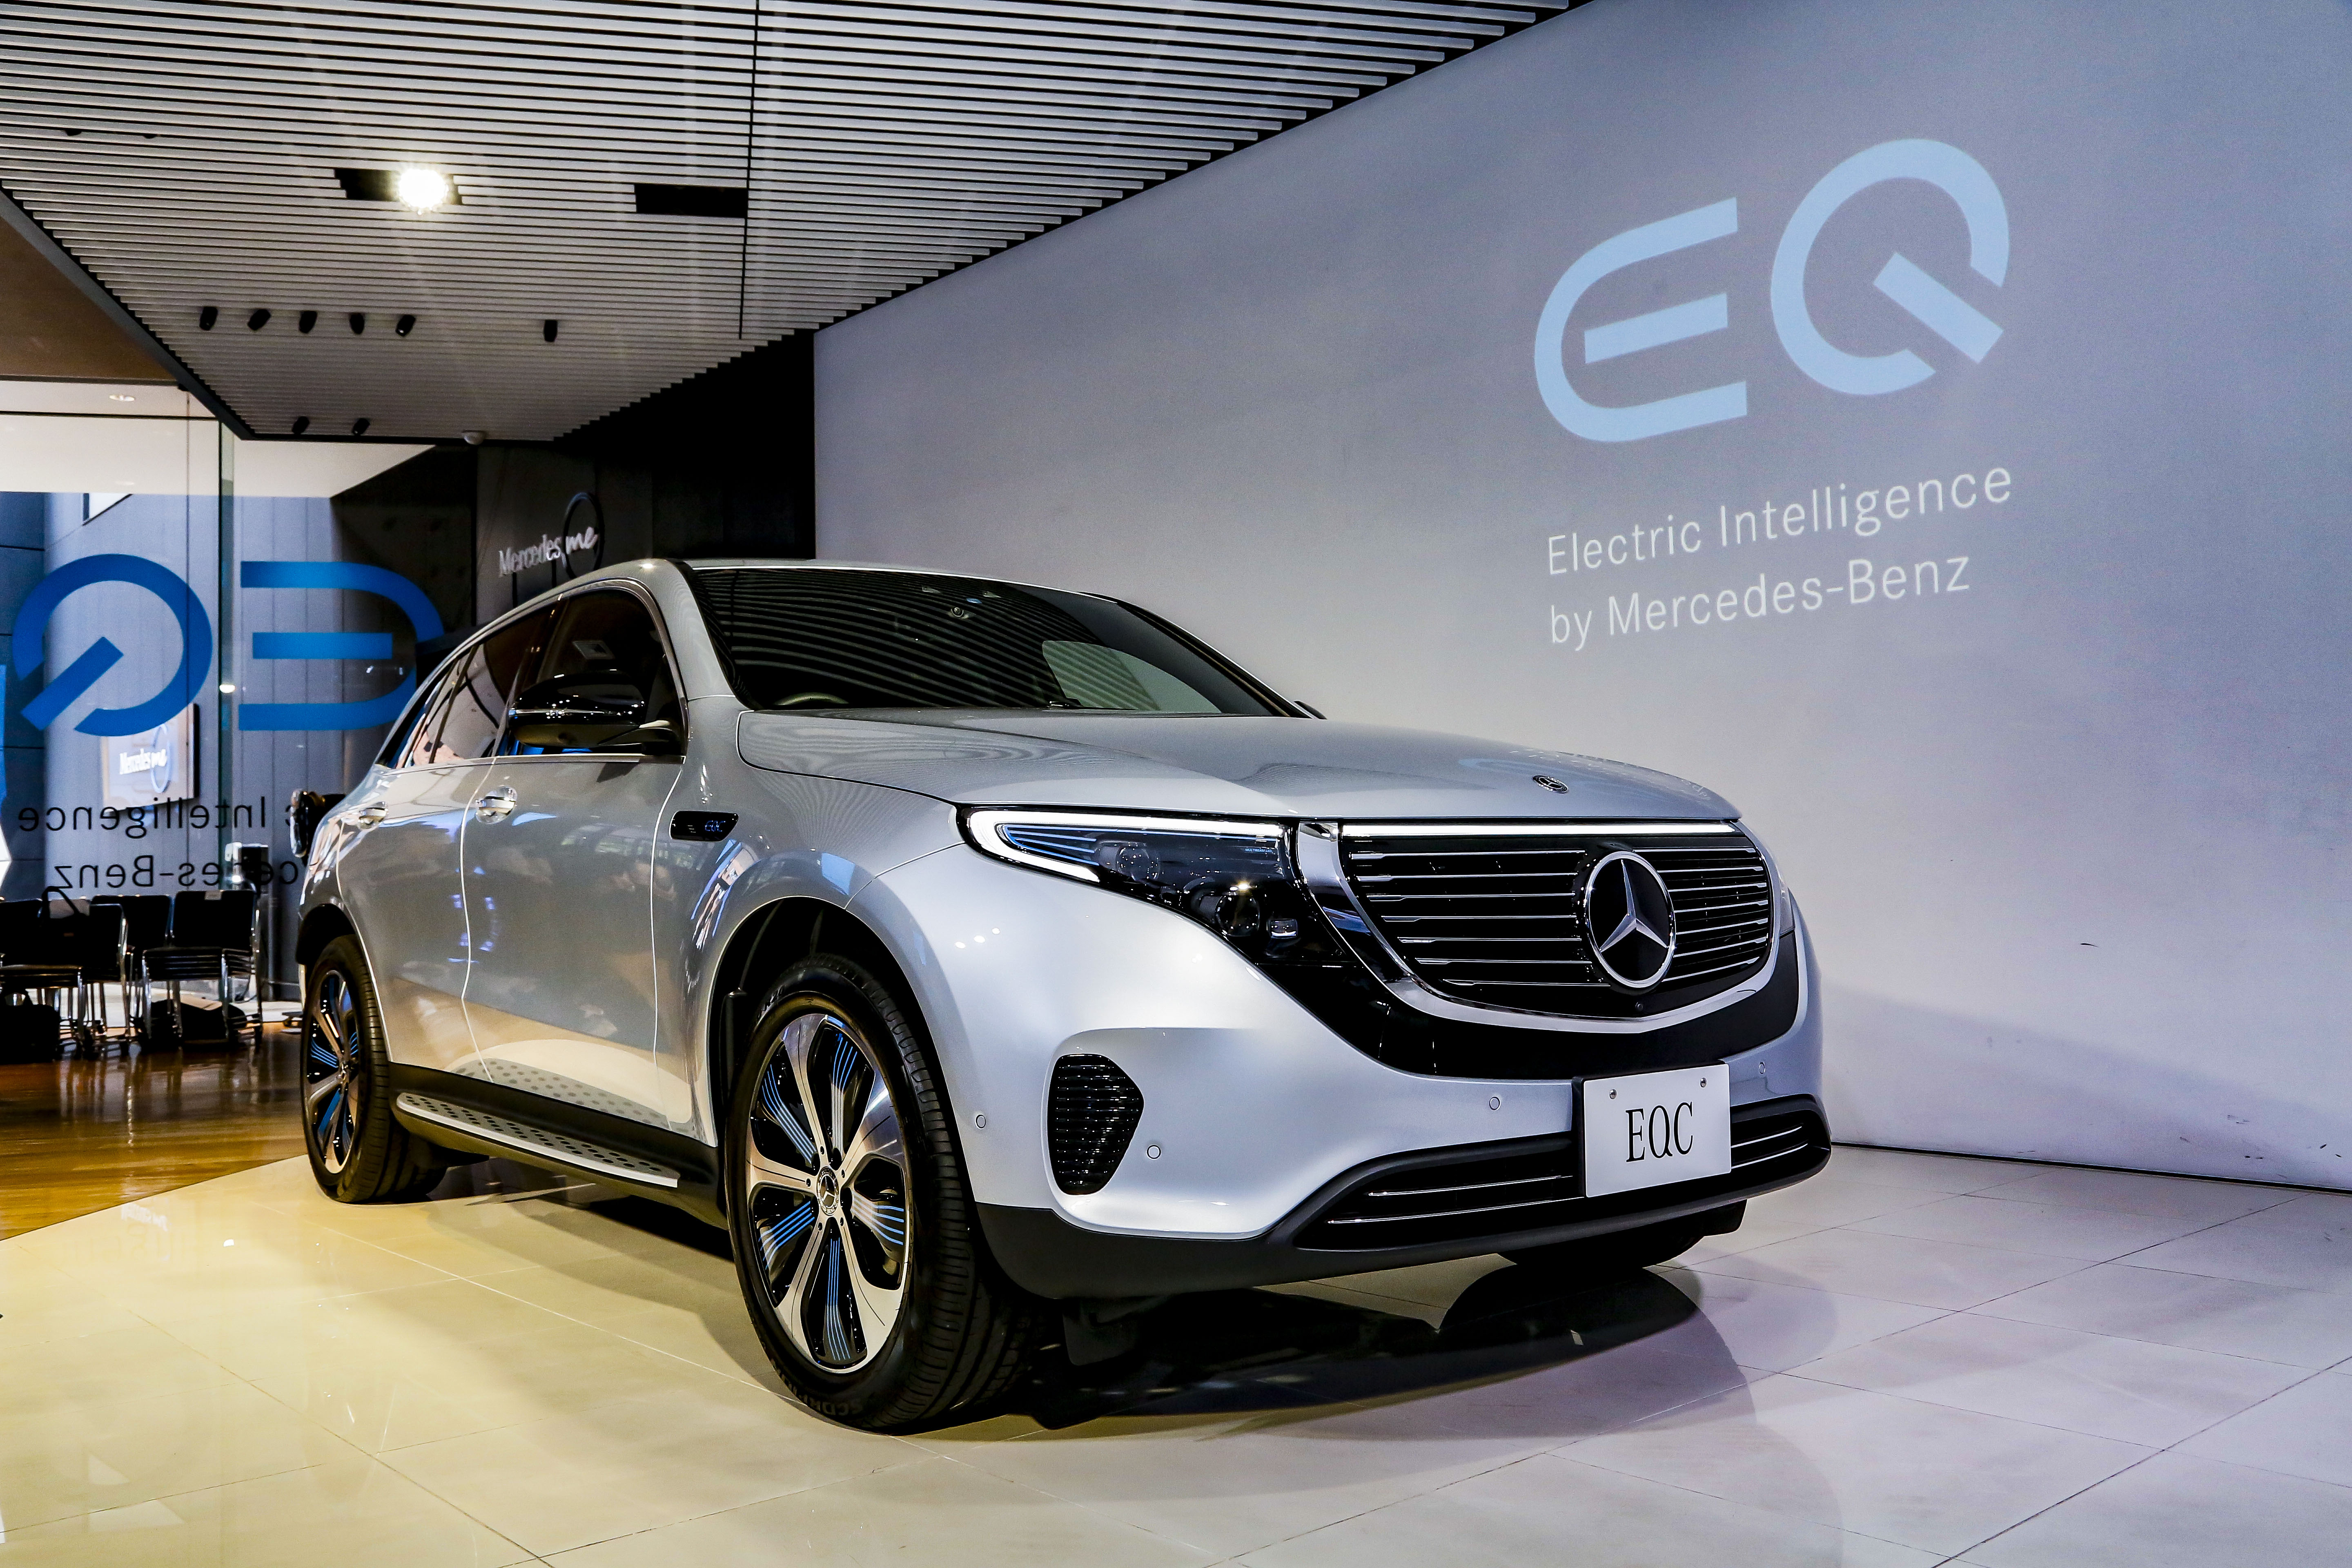 メルセデス ベンツが初の電気自動車 Eqc を発表 価格は1080万円から 中古車なら グーネット